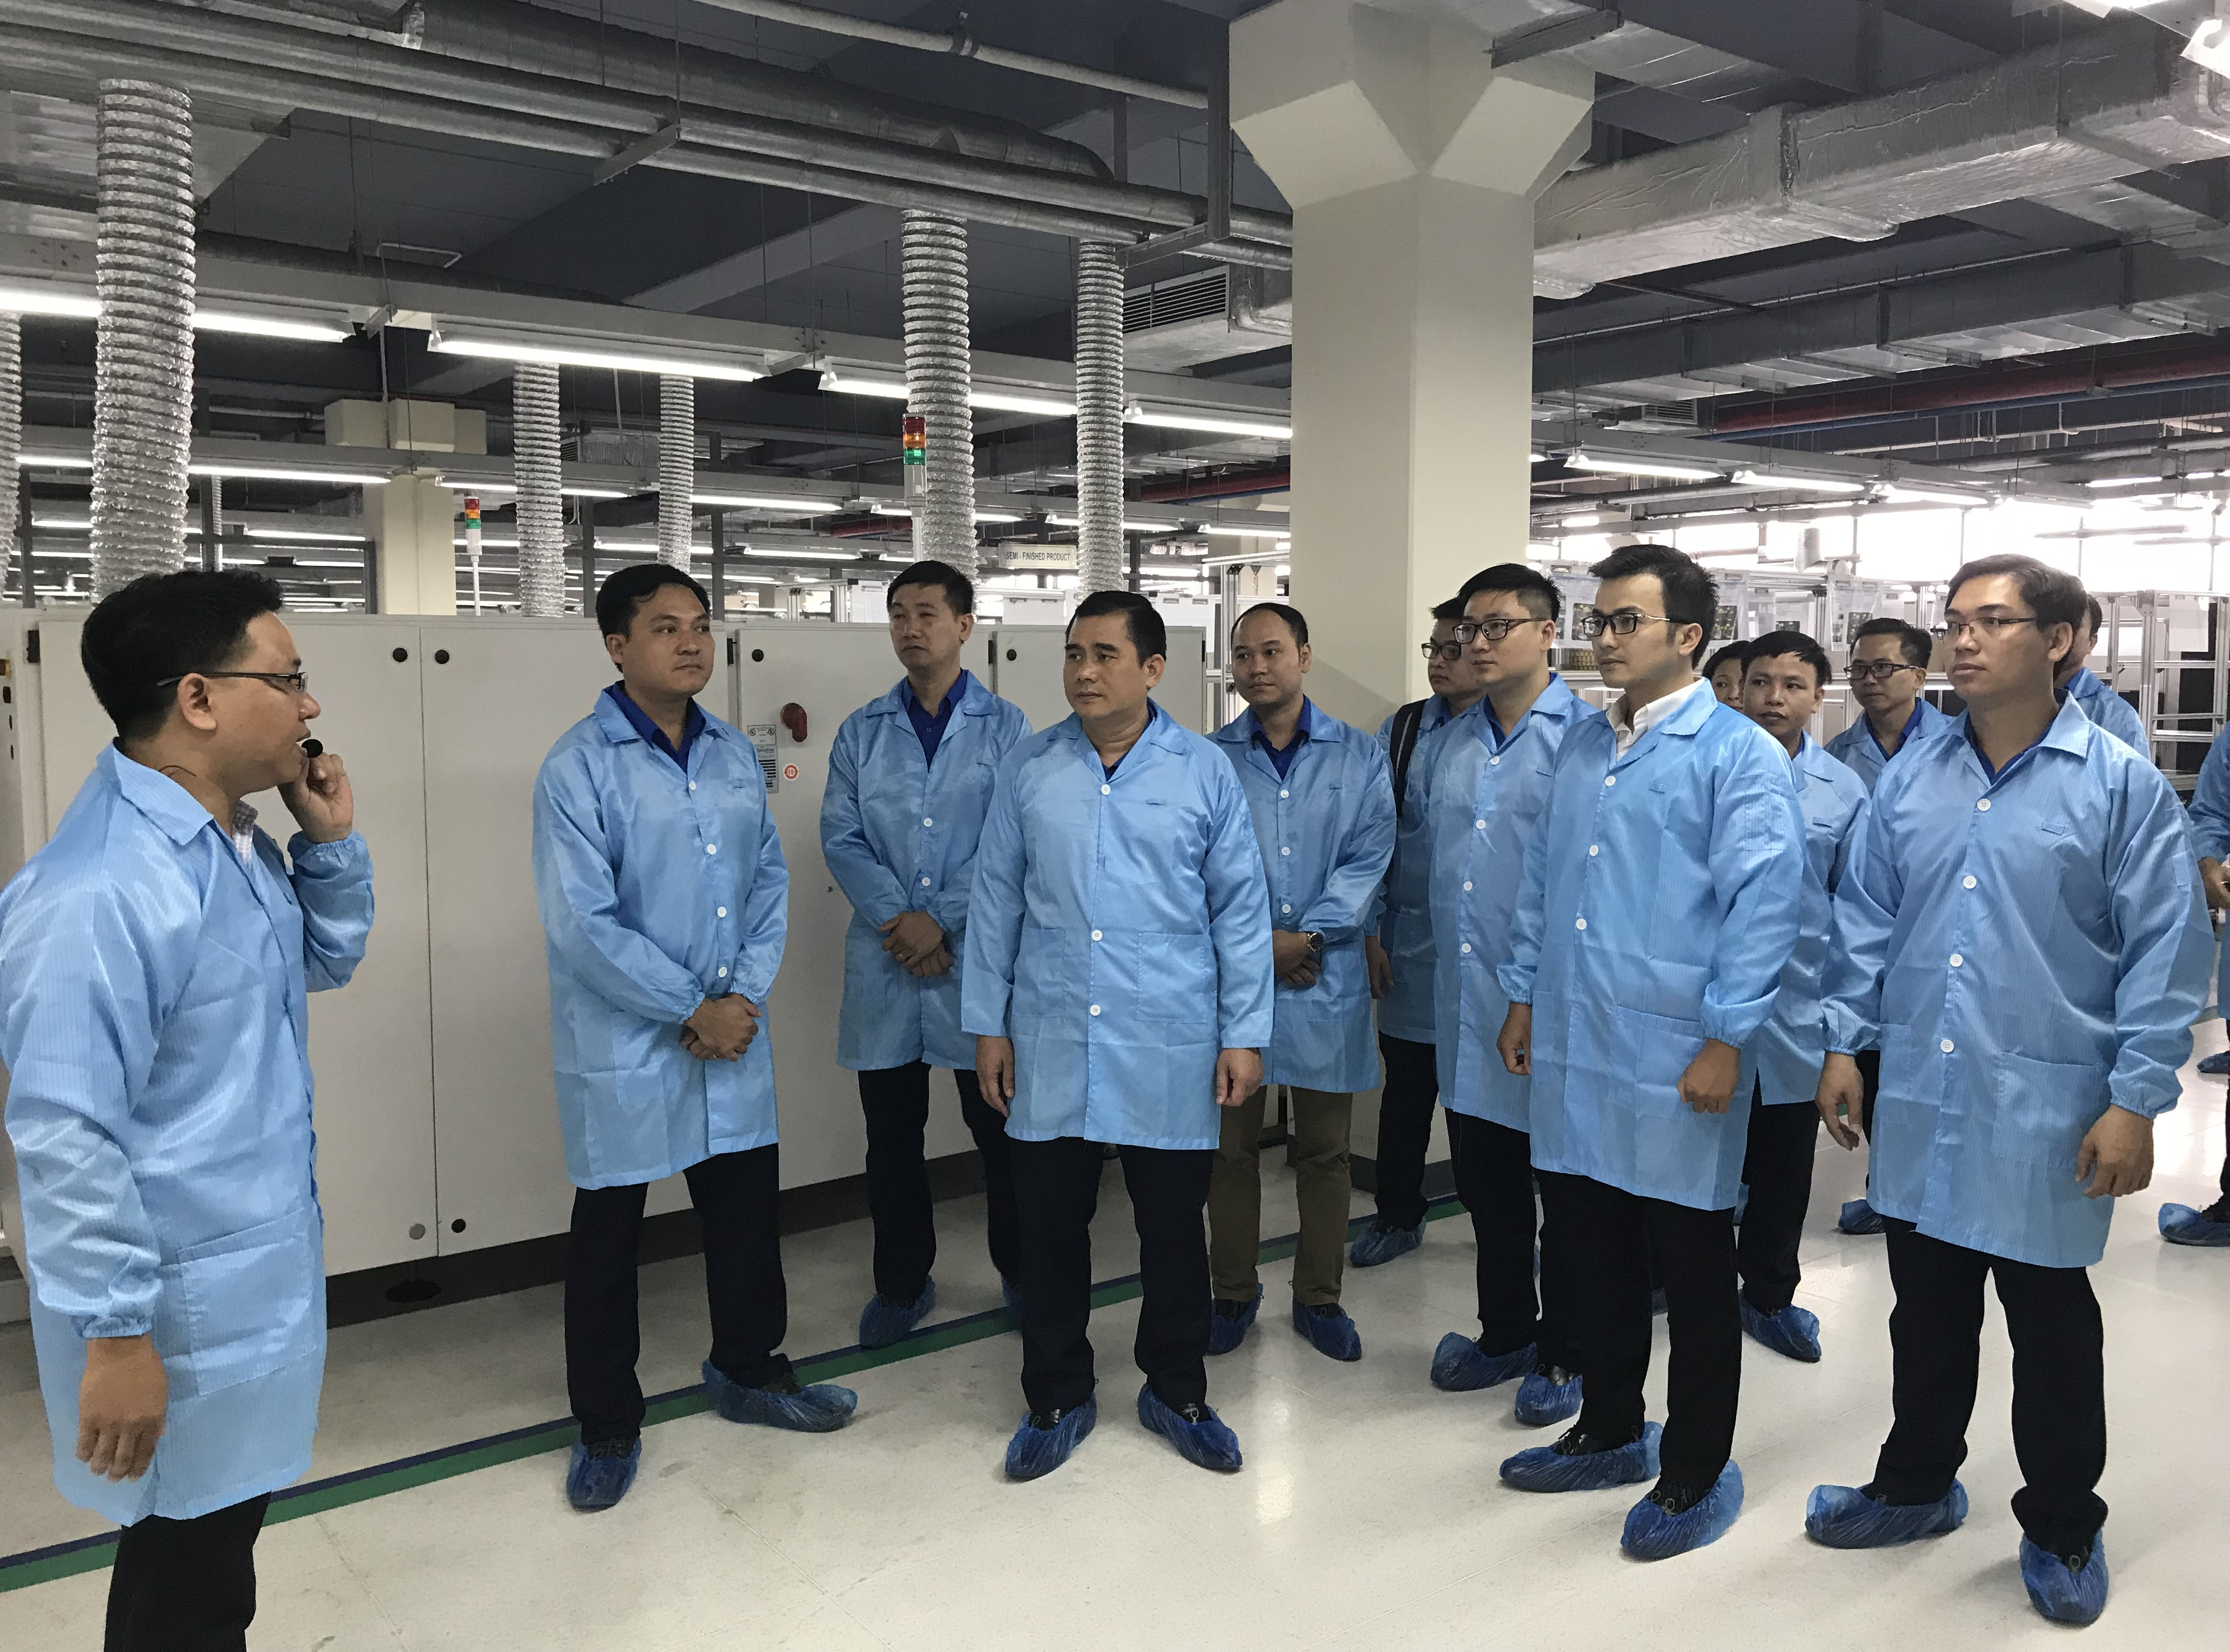 Các đại biểu thăm quan nhà máy điện tử số 2 - VNPT Technology trong khuôn khổ chương trình của Diễn đàn “Đổi mới, sáng tạo vì sự phát triển của doanh nghiệp” do Đoàn Khối tổ chức